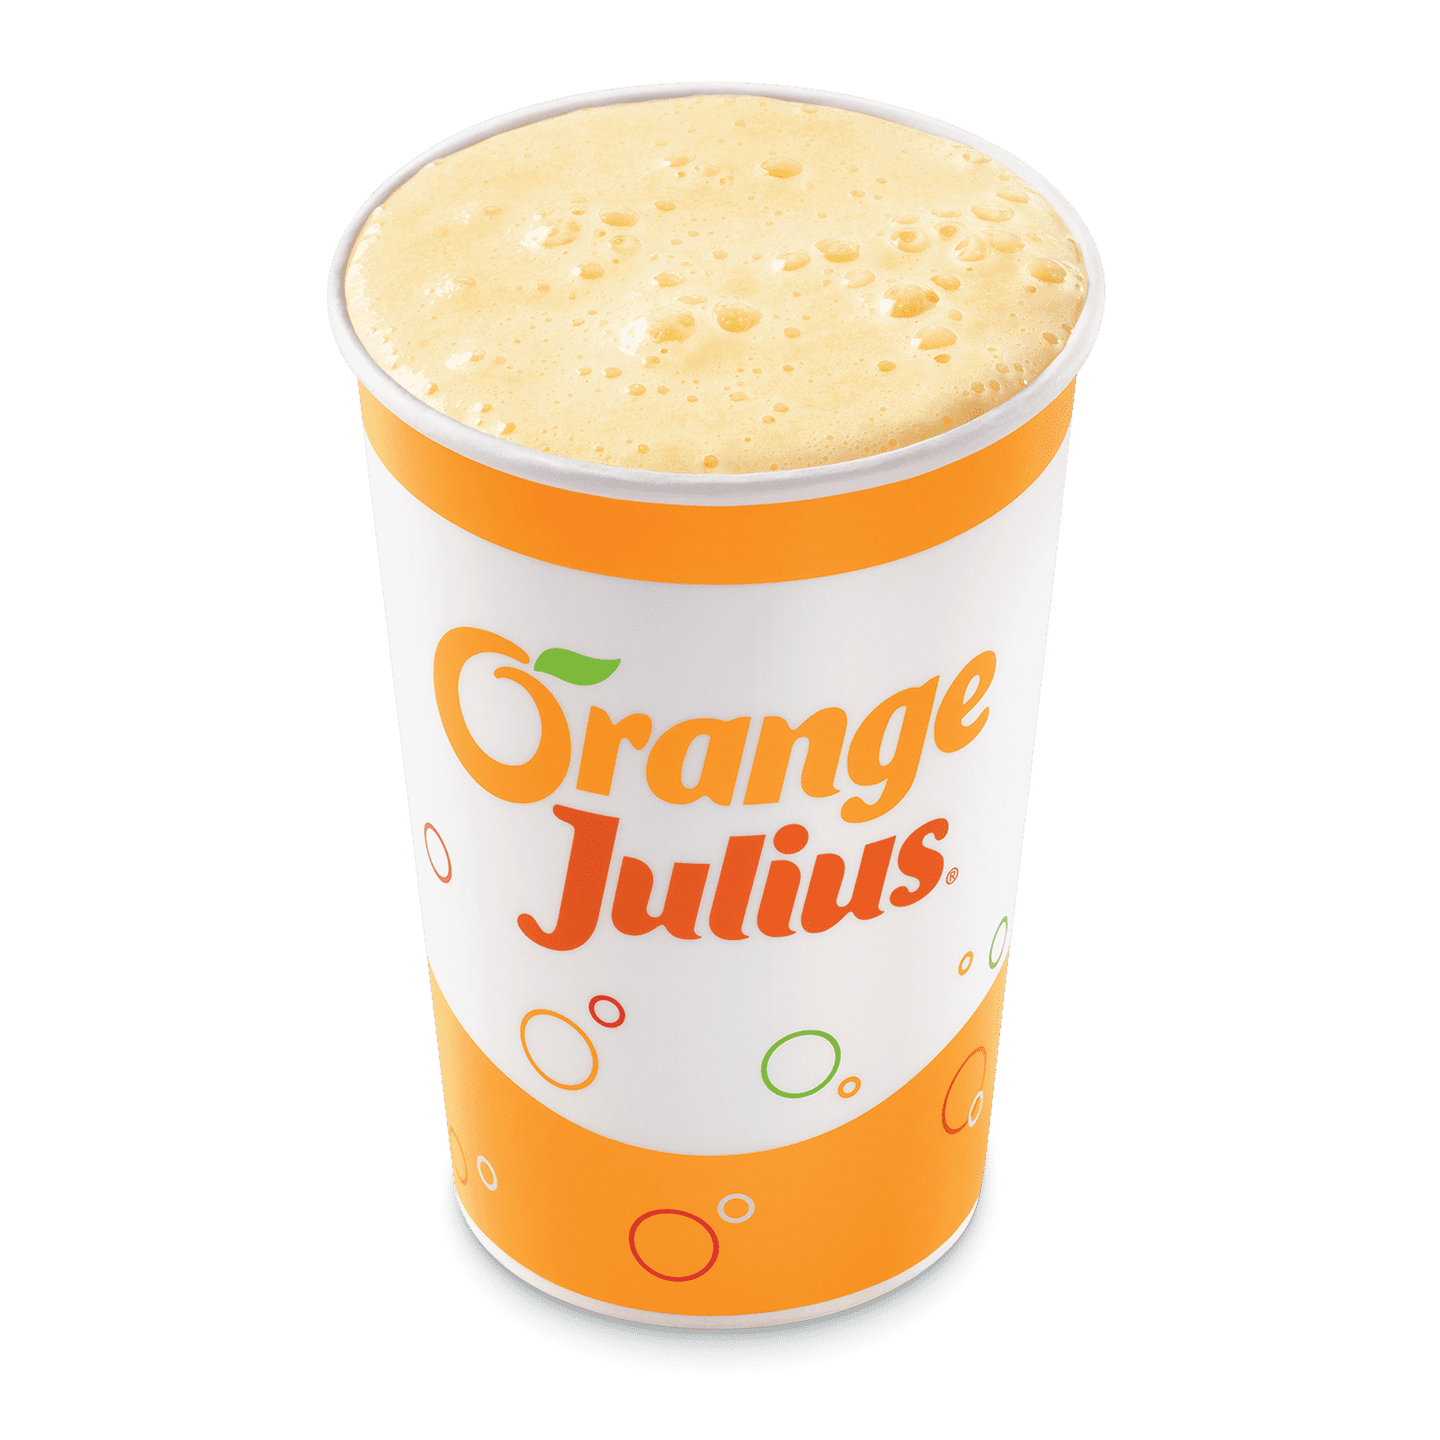 Orange Julius Original Dairy Queen Menu